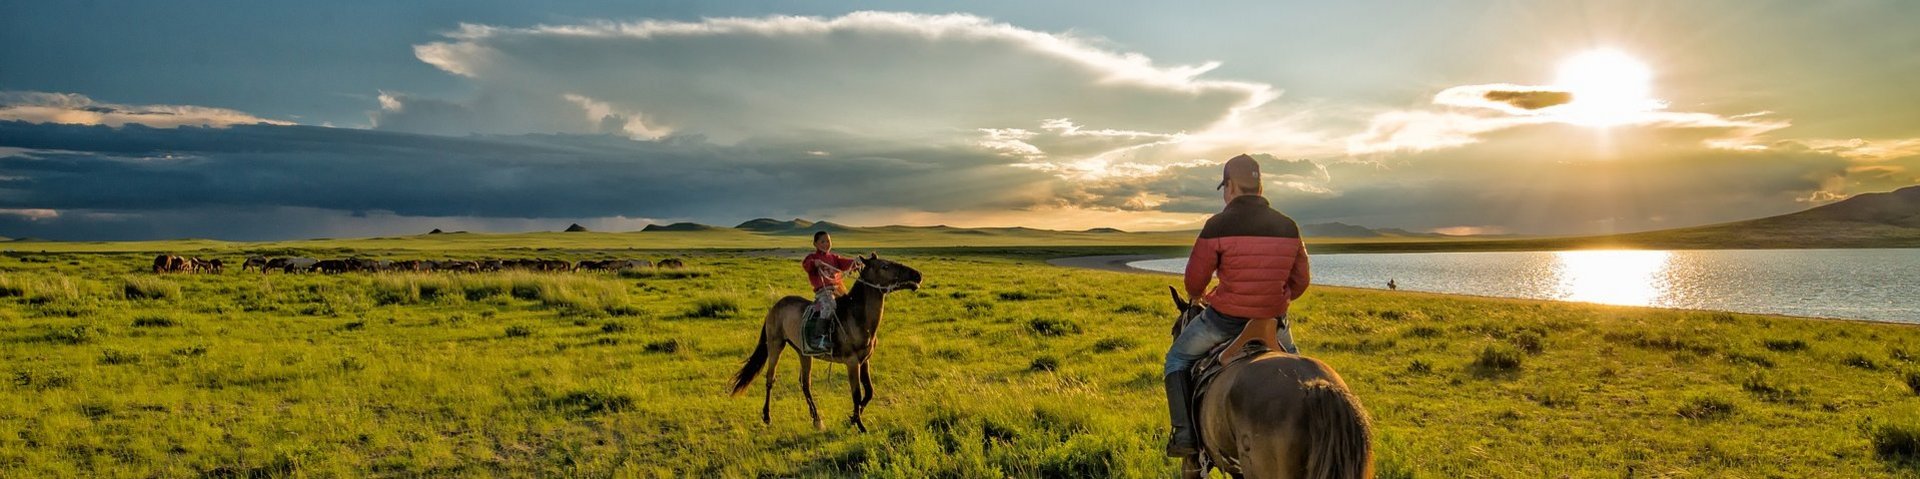 Zwei Reiter auf ihren Pferden bei Sonnenuntergang in der Mongolei